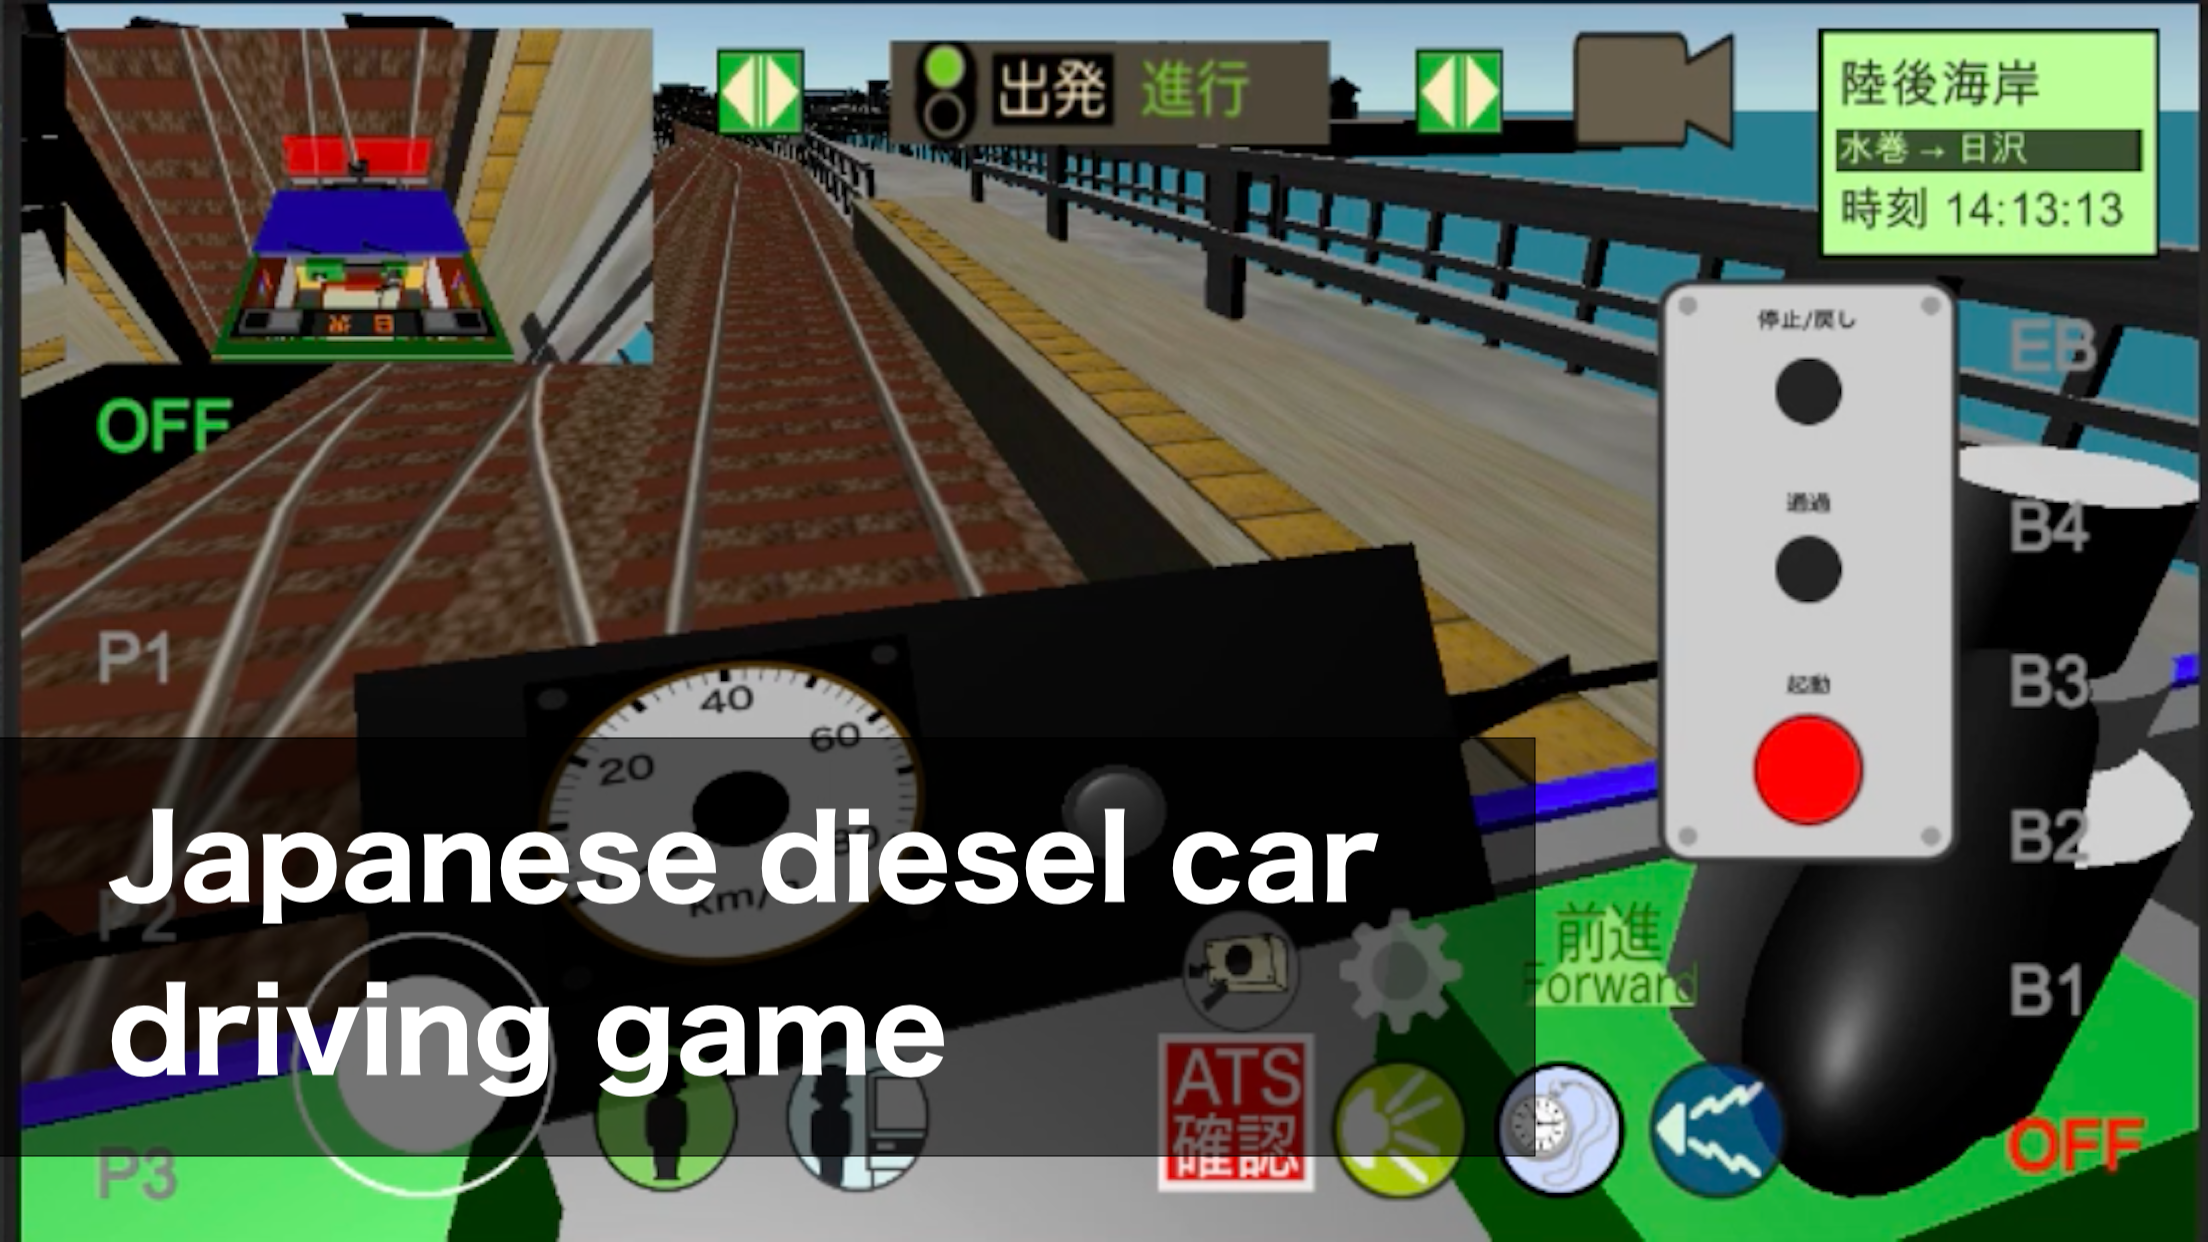 Screenshot 1 of เครื่องจำลองการขับรถไฟของญี่ปุ่น 7.6